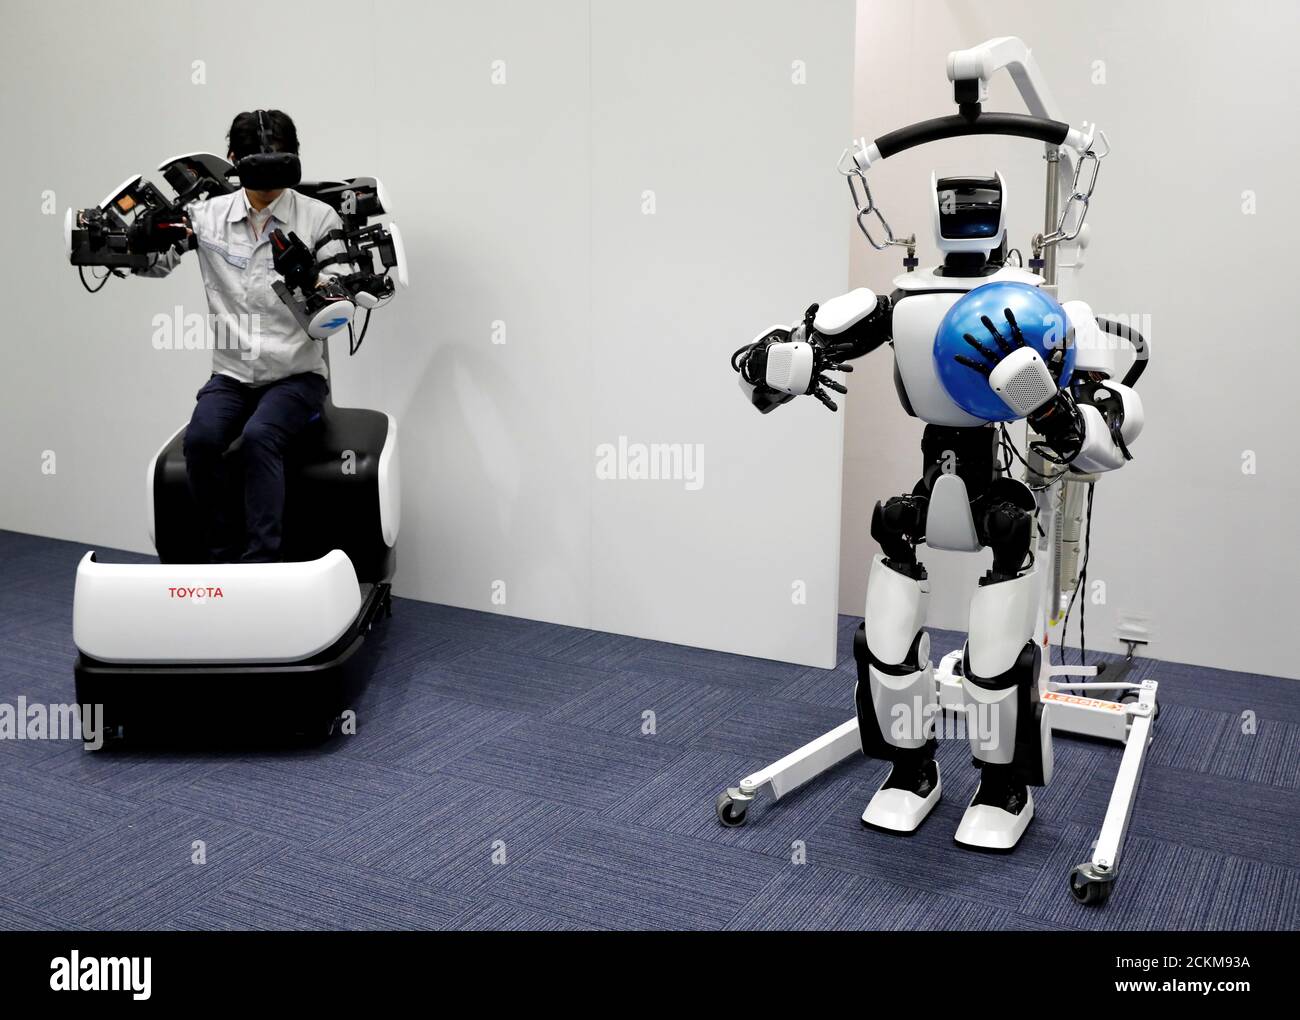 Другие роботы. Современные роботы 2020. Робот Toyota. Обучающийся робот. Роботы виды роботов.